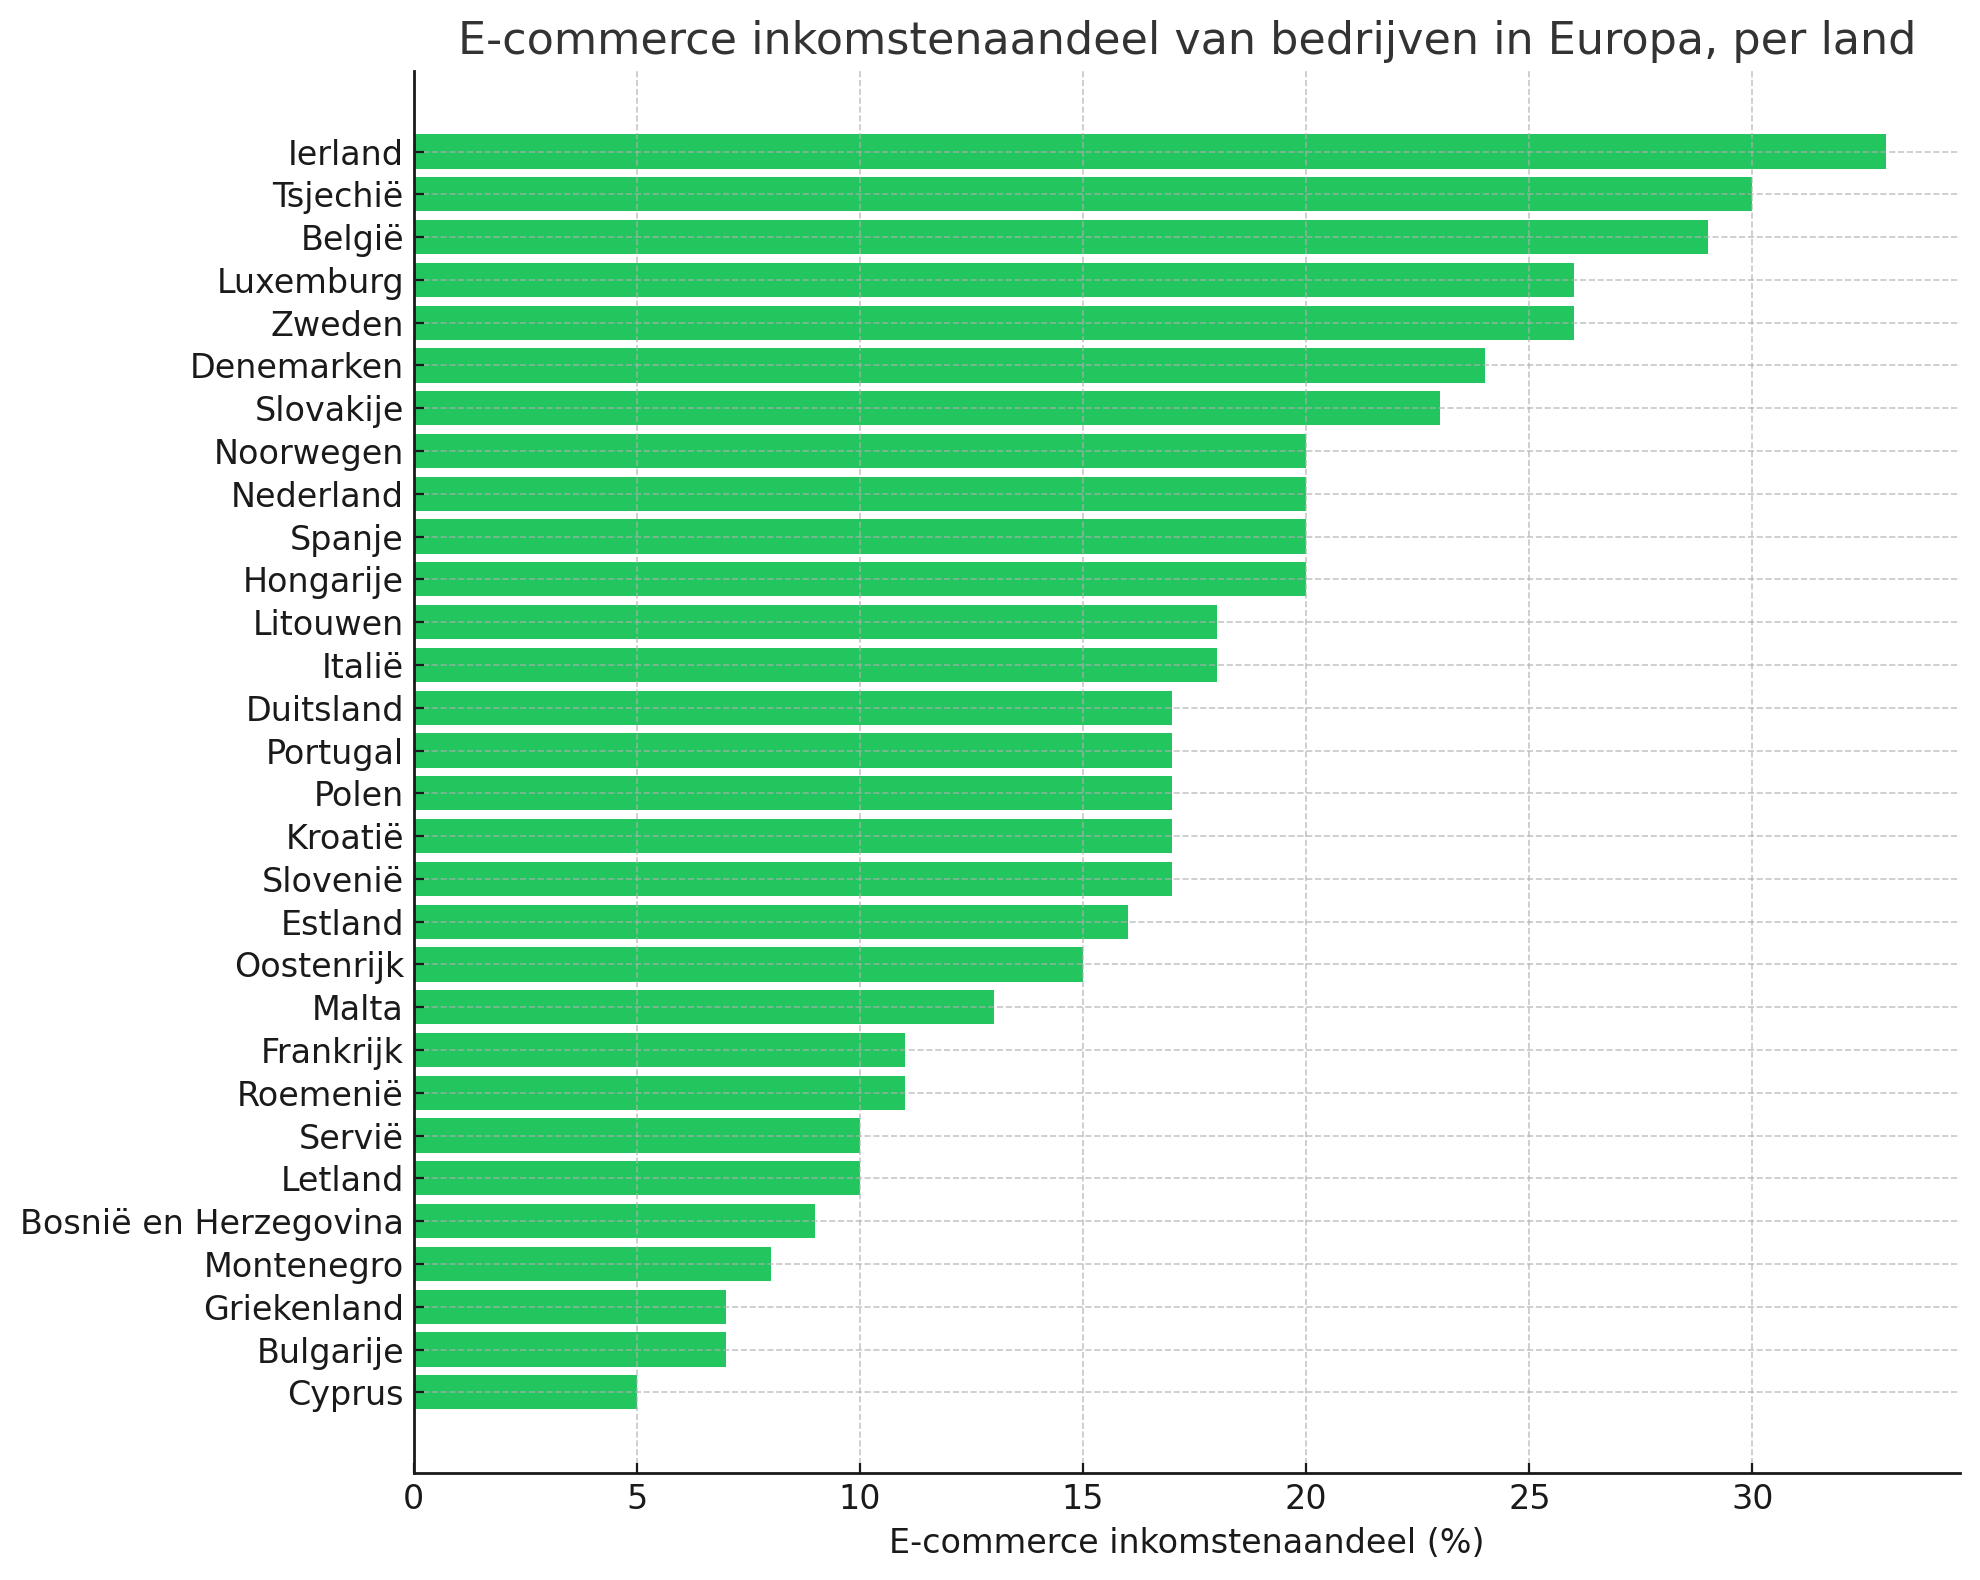 E-commerce inkomstenaandeel van bedrijven in Europa per land